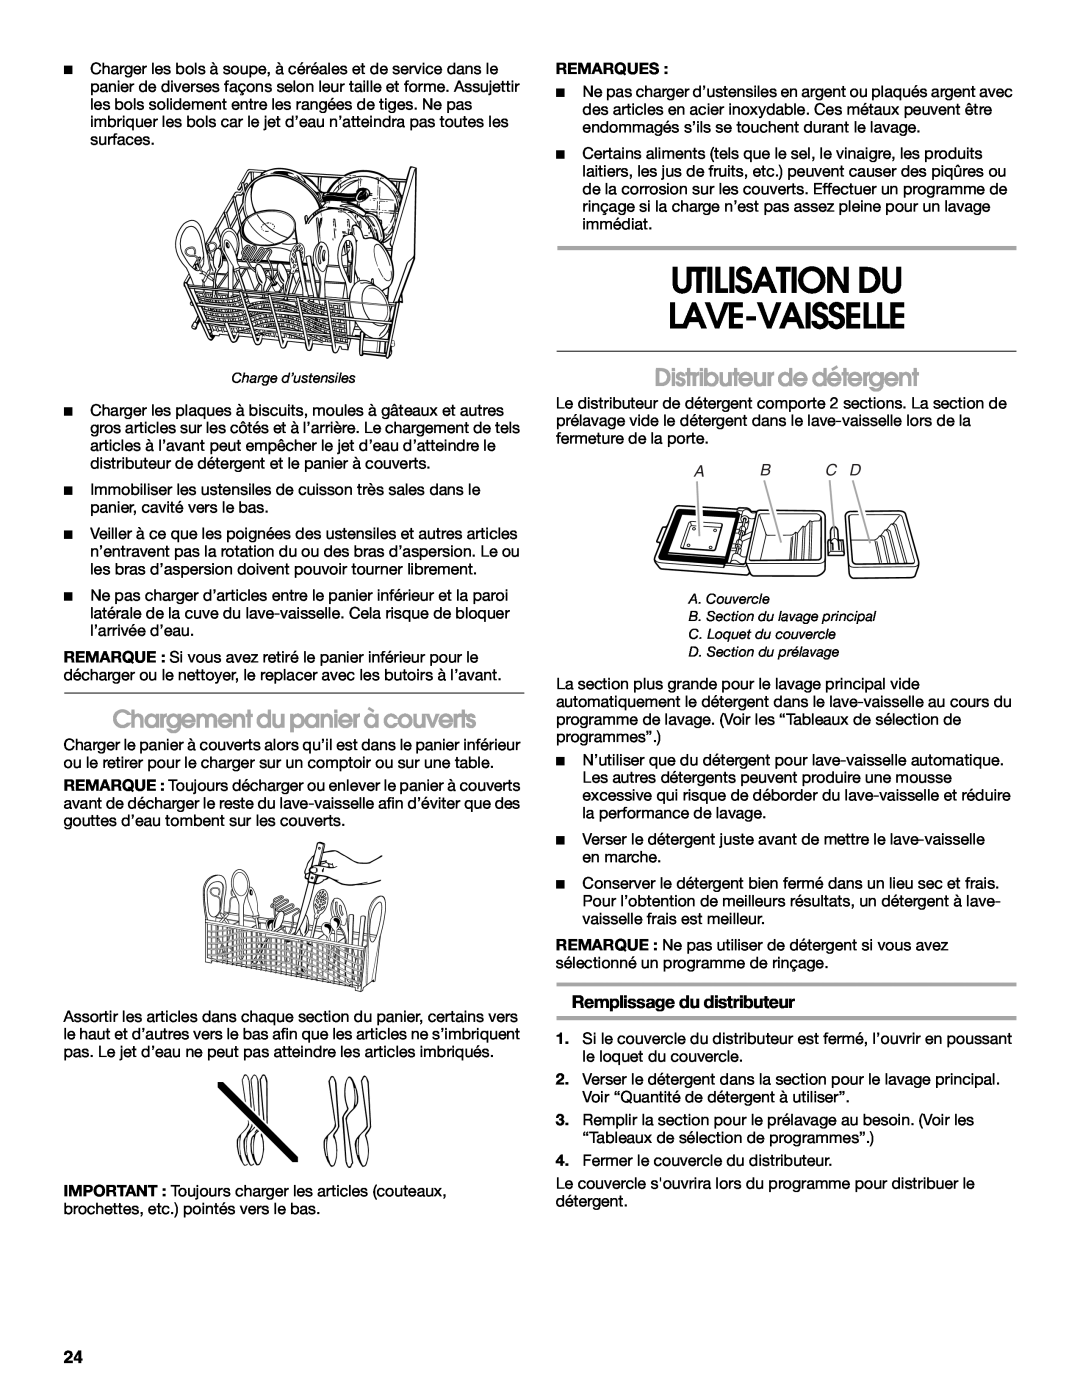 Estate TUD6900 manual Utilisation Du Lave-Vaisselle, Chargement du panier à couverts, Distributeur de détergent, Remarques 